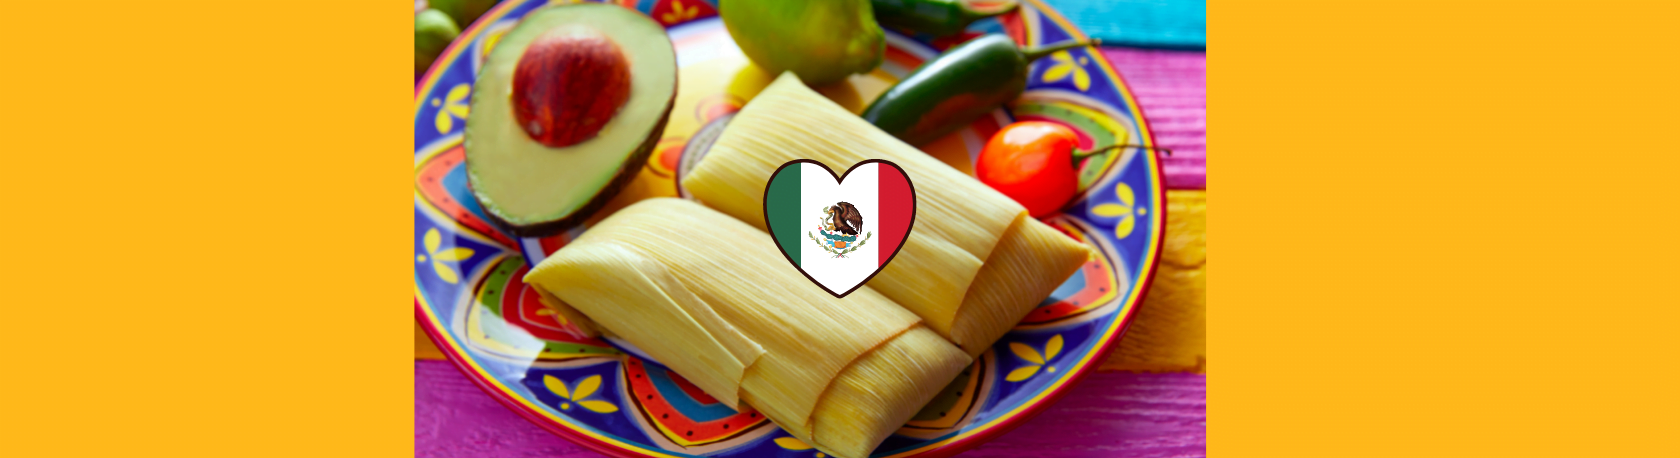 ¿Sabías que en México hay más de 500 variedades de tamales?